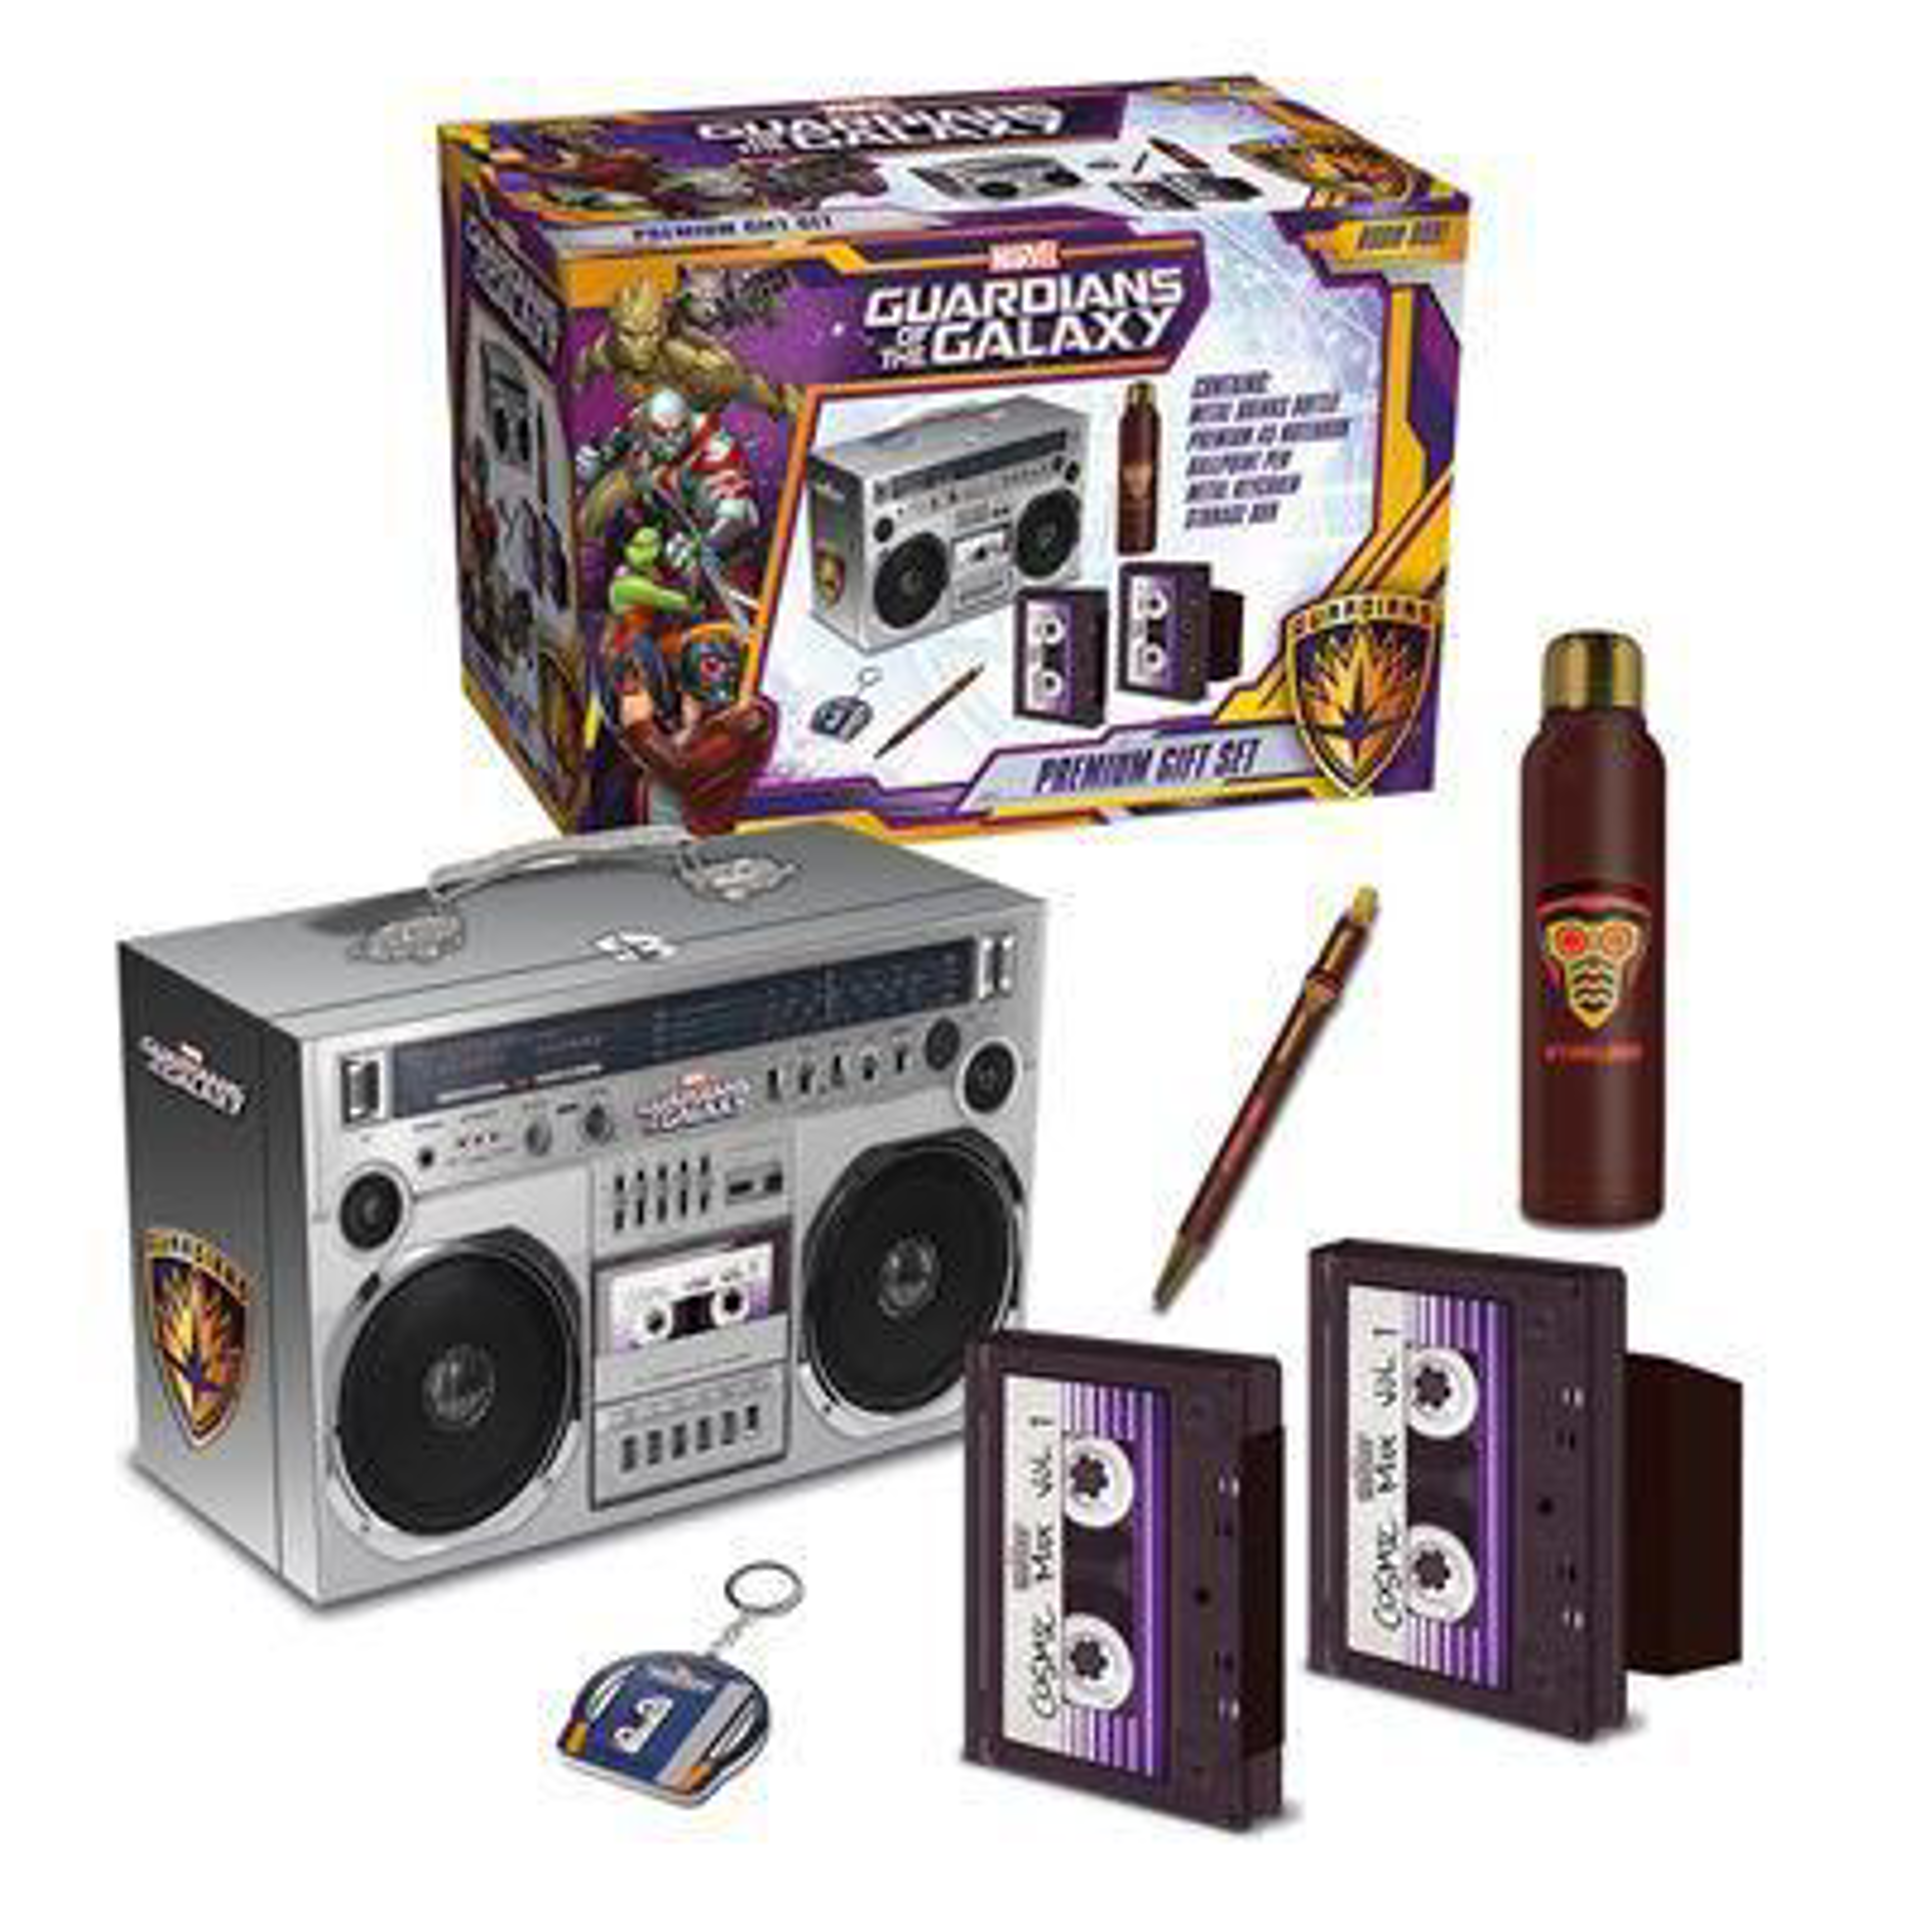 Les Gardiens de la Galaxie - Coffret cadeau (Starlords Boom Box) : stylo à bille, bouteille en métal, cahier et porte-clés